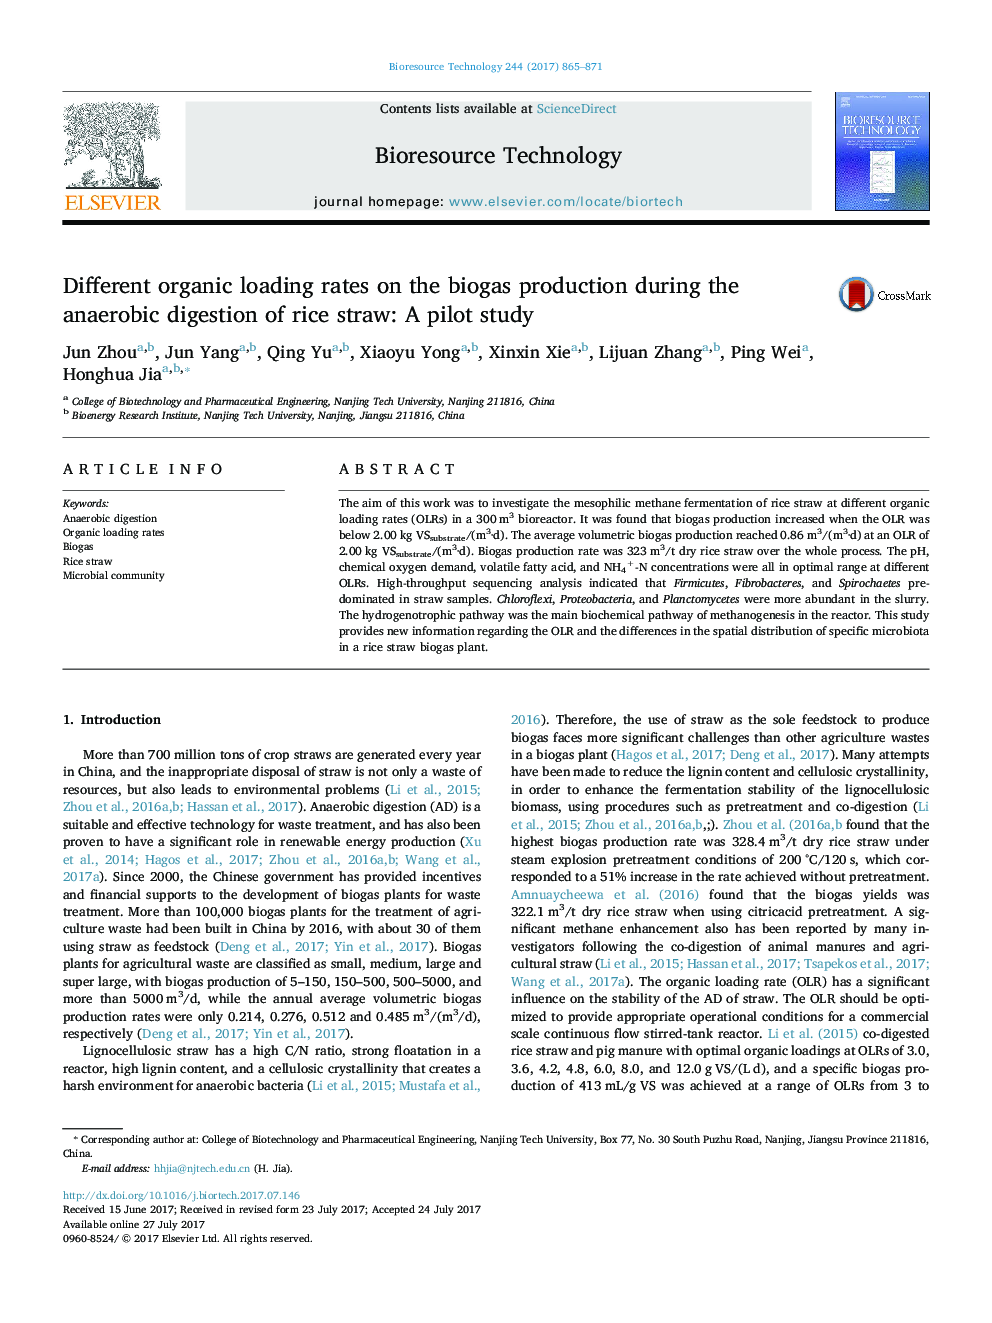 نرخ بارگیری ارگانیک مختلف در تولید بیوگاز در طی هضم بی هوازی از نی نی: مطالعه آزمایشی 